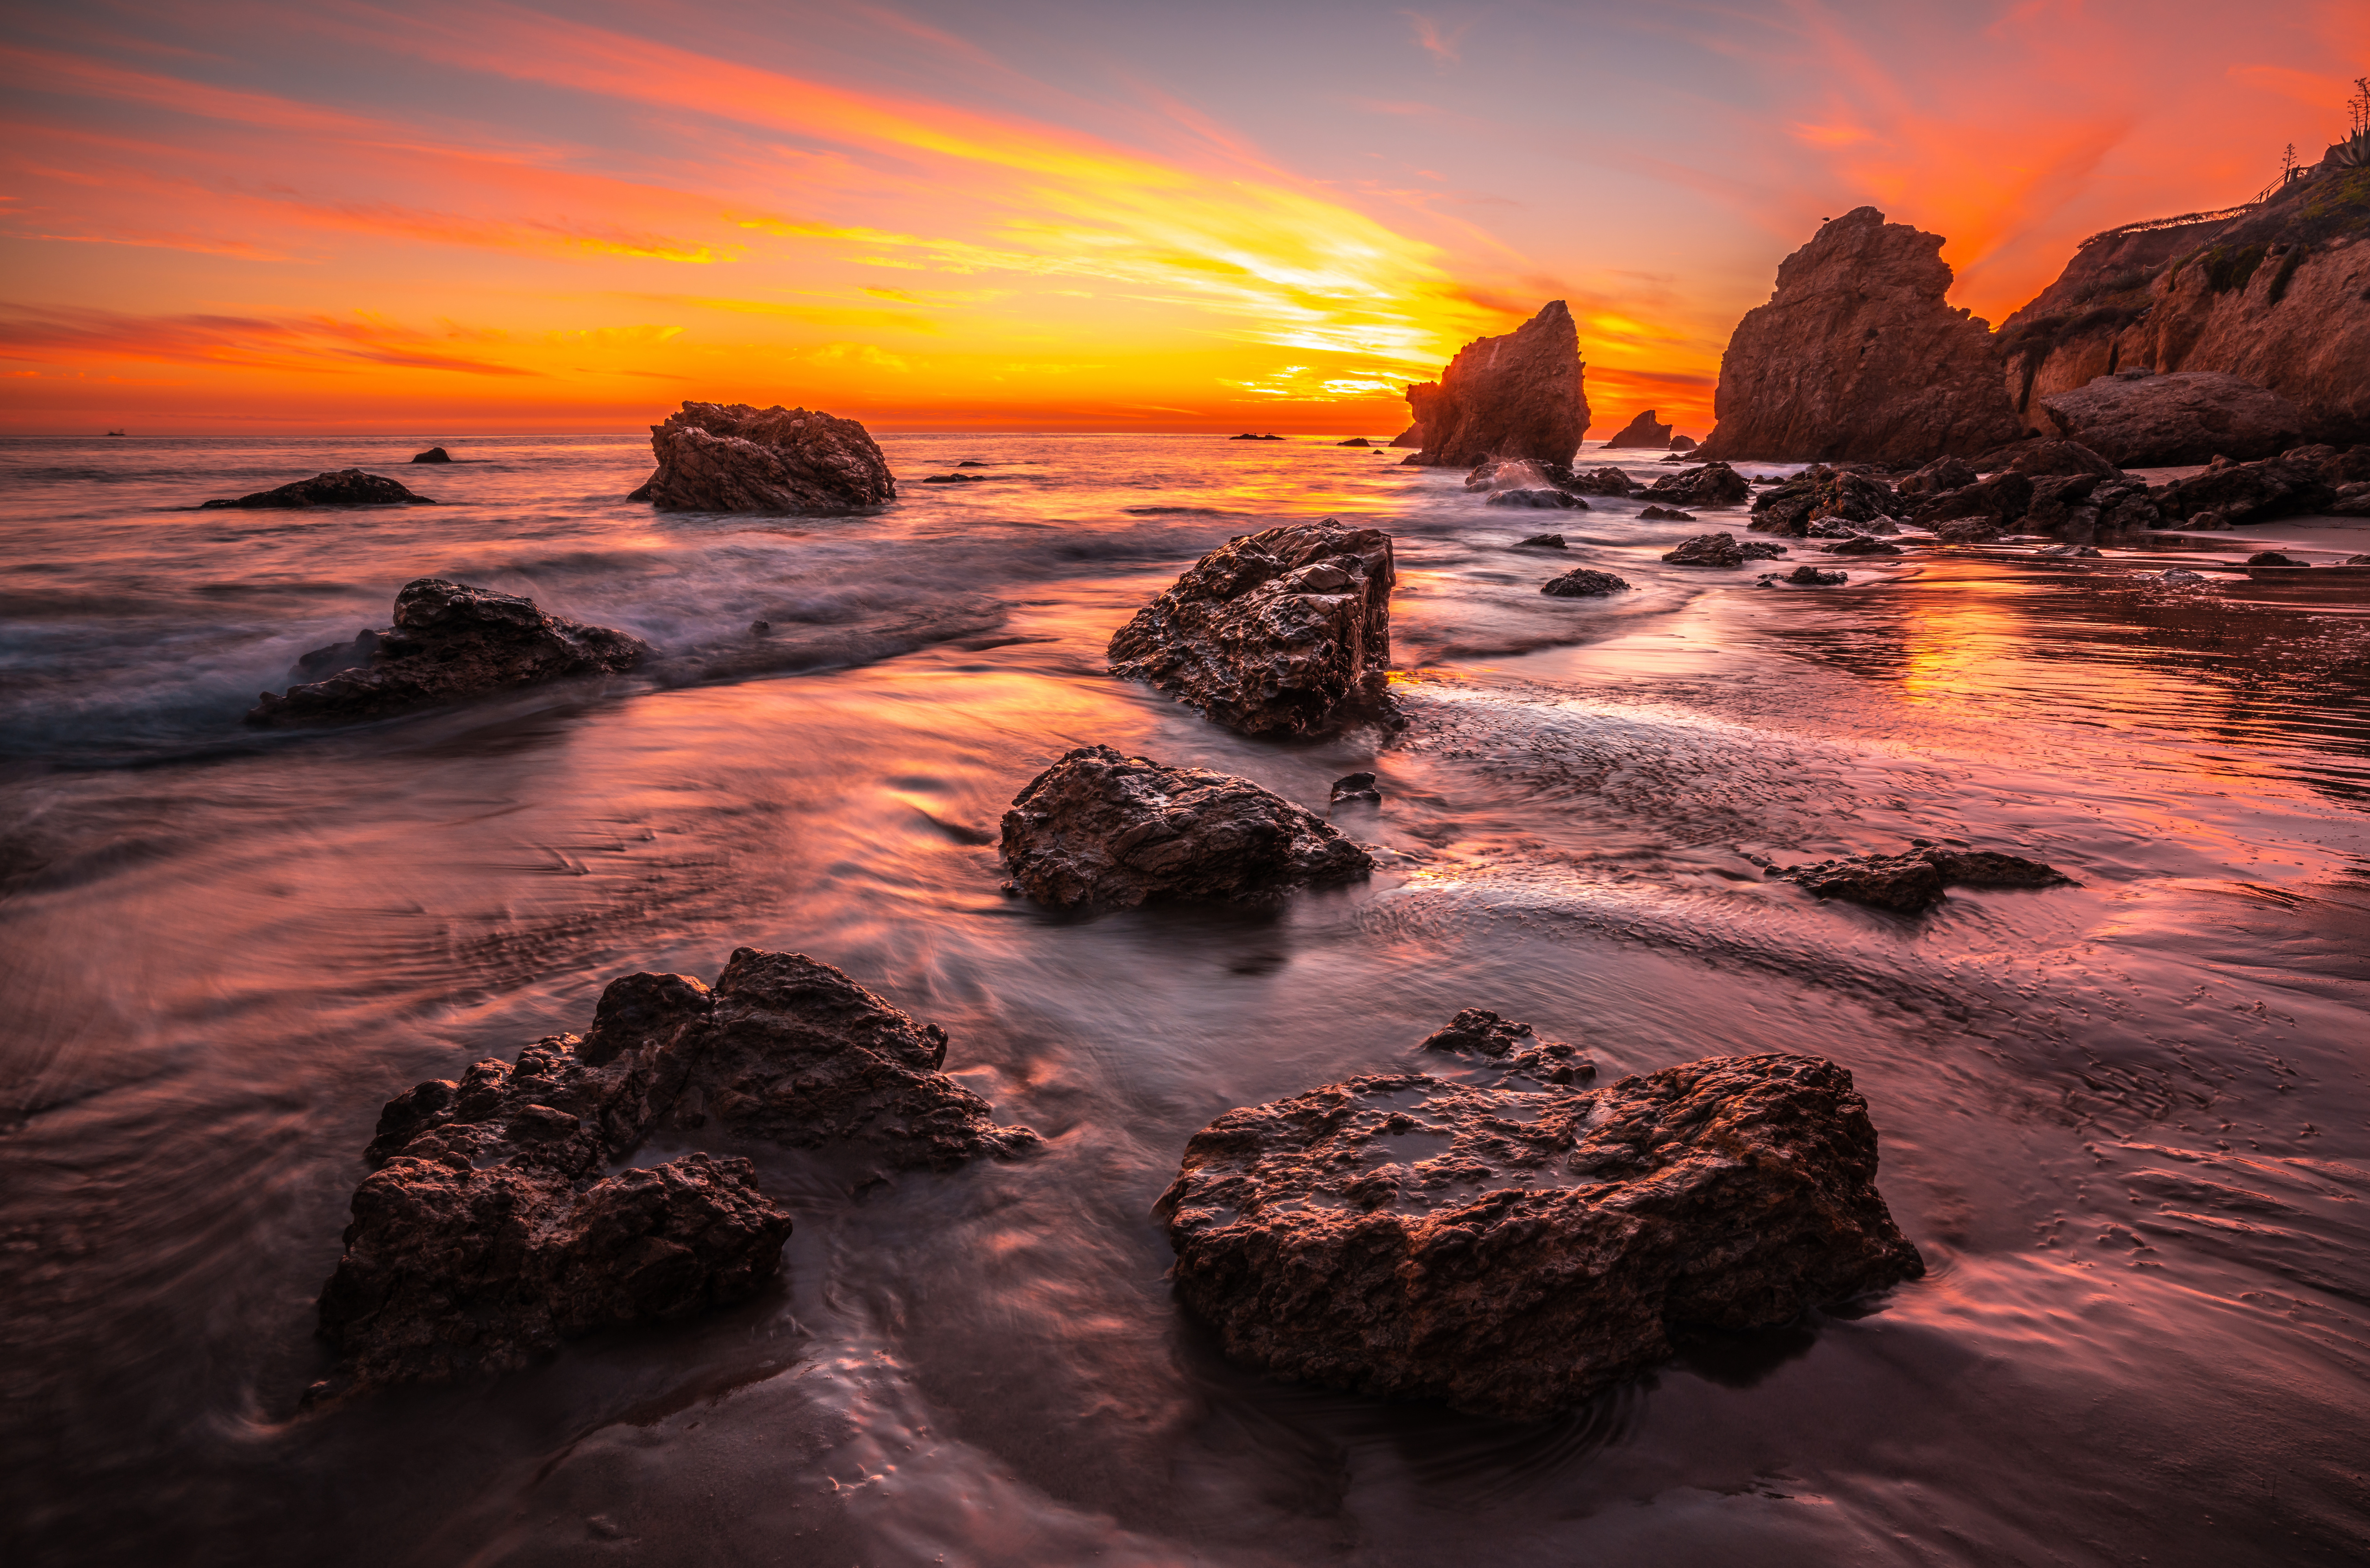 Фото Калифорния калифорнийская скала скалистый берег - бесплатные картинки на Fonwall